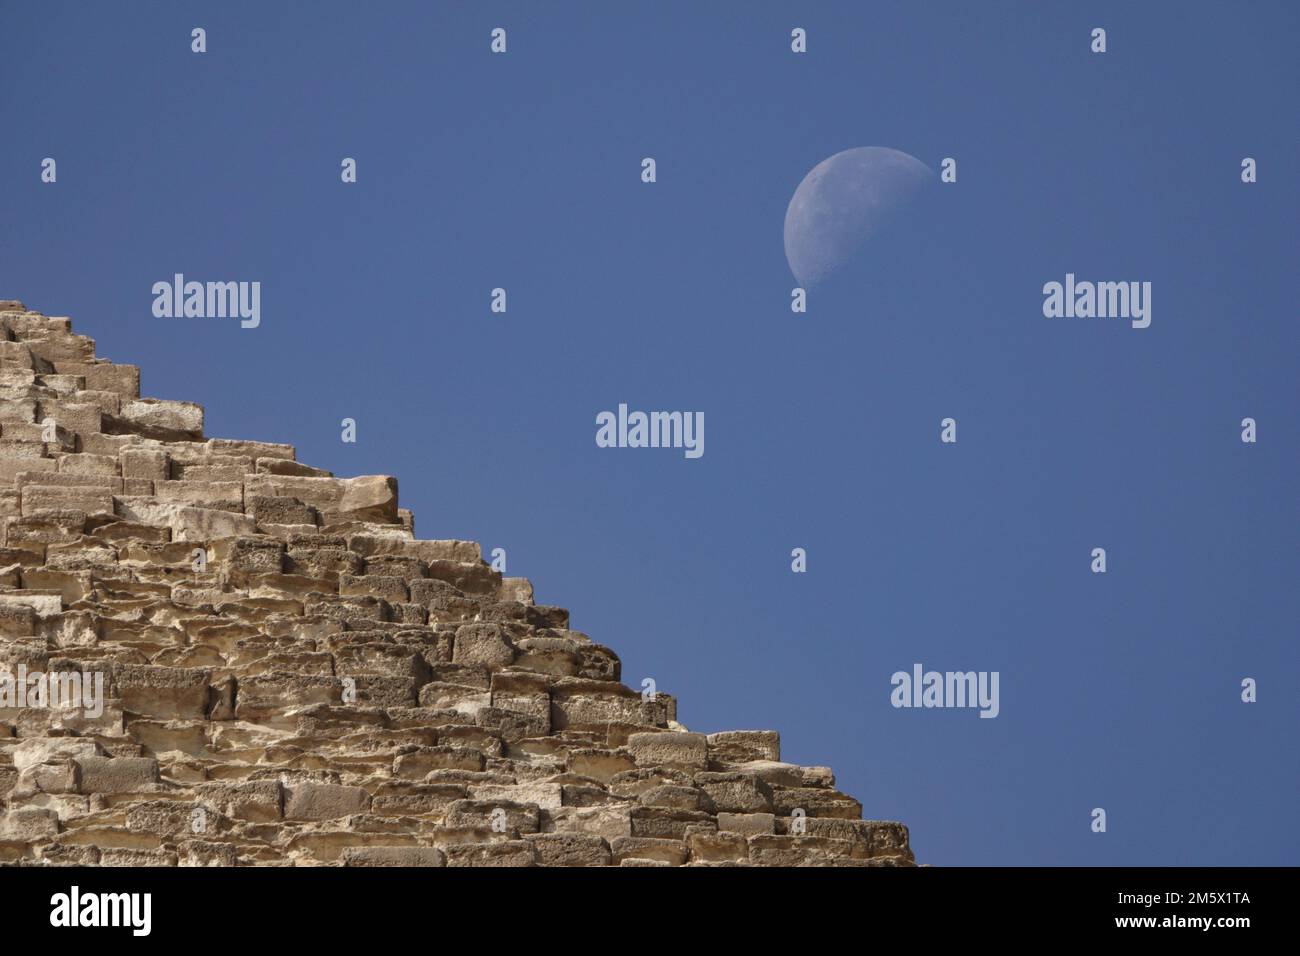 La luna vista detrás de la Pirámide de Khufu, la Gran Pirámide de Giza. Foto de stock